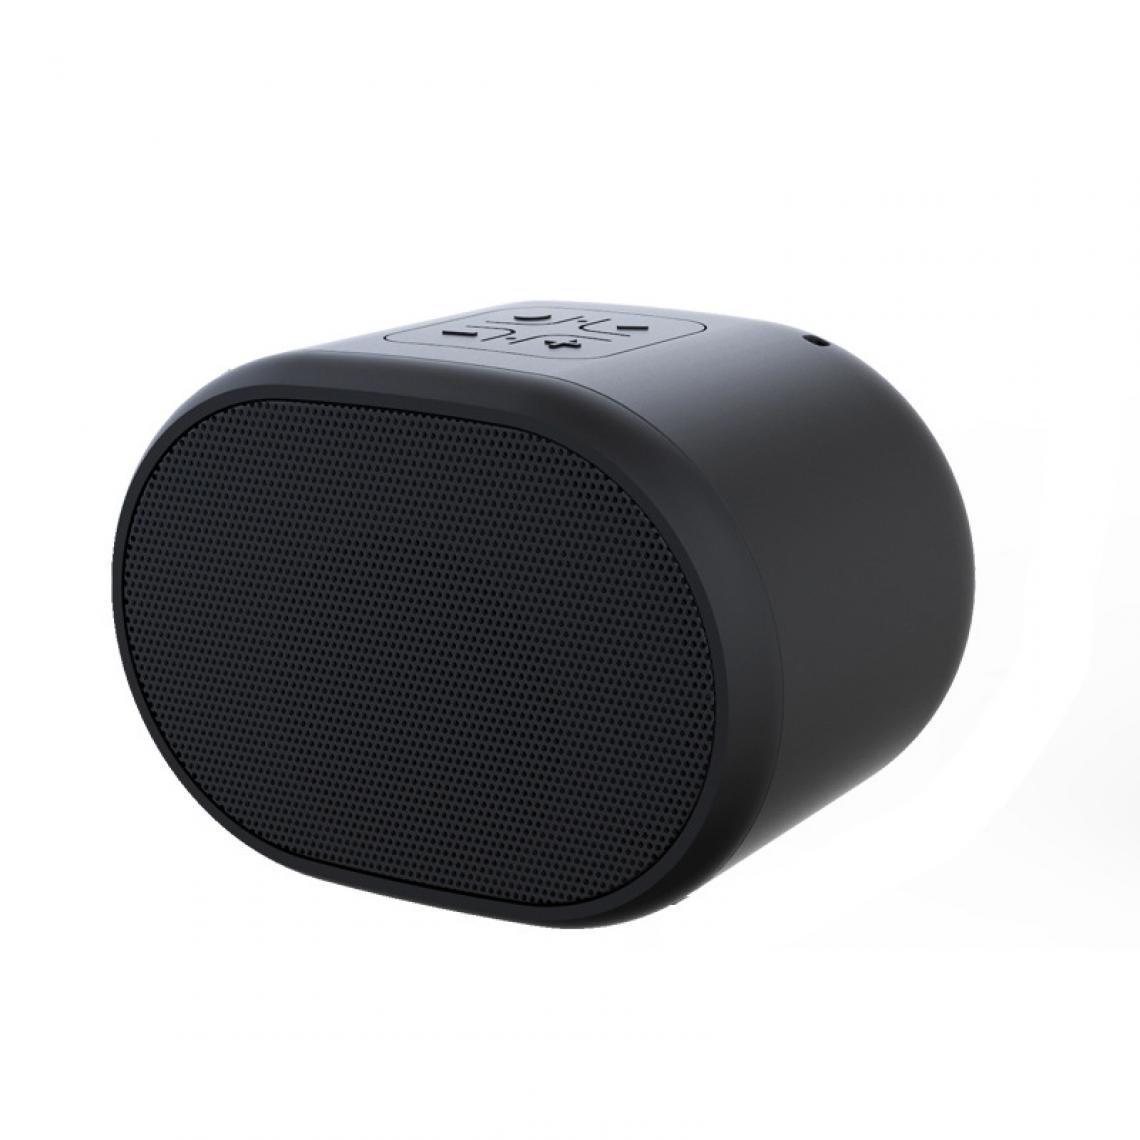 Universal - Haut-parleur portable stéréo Bluetooth 5.0 sans fil, microphone intégré, son HiFi étanche, avec subwoofer, support ordinateur USB/TF | subwoofer (noir) - Enceinte PC